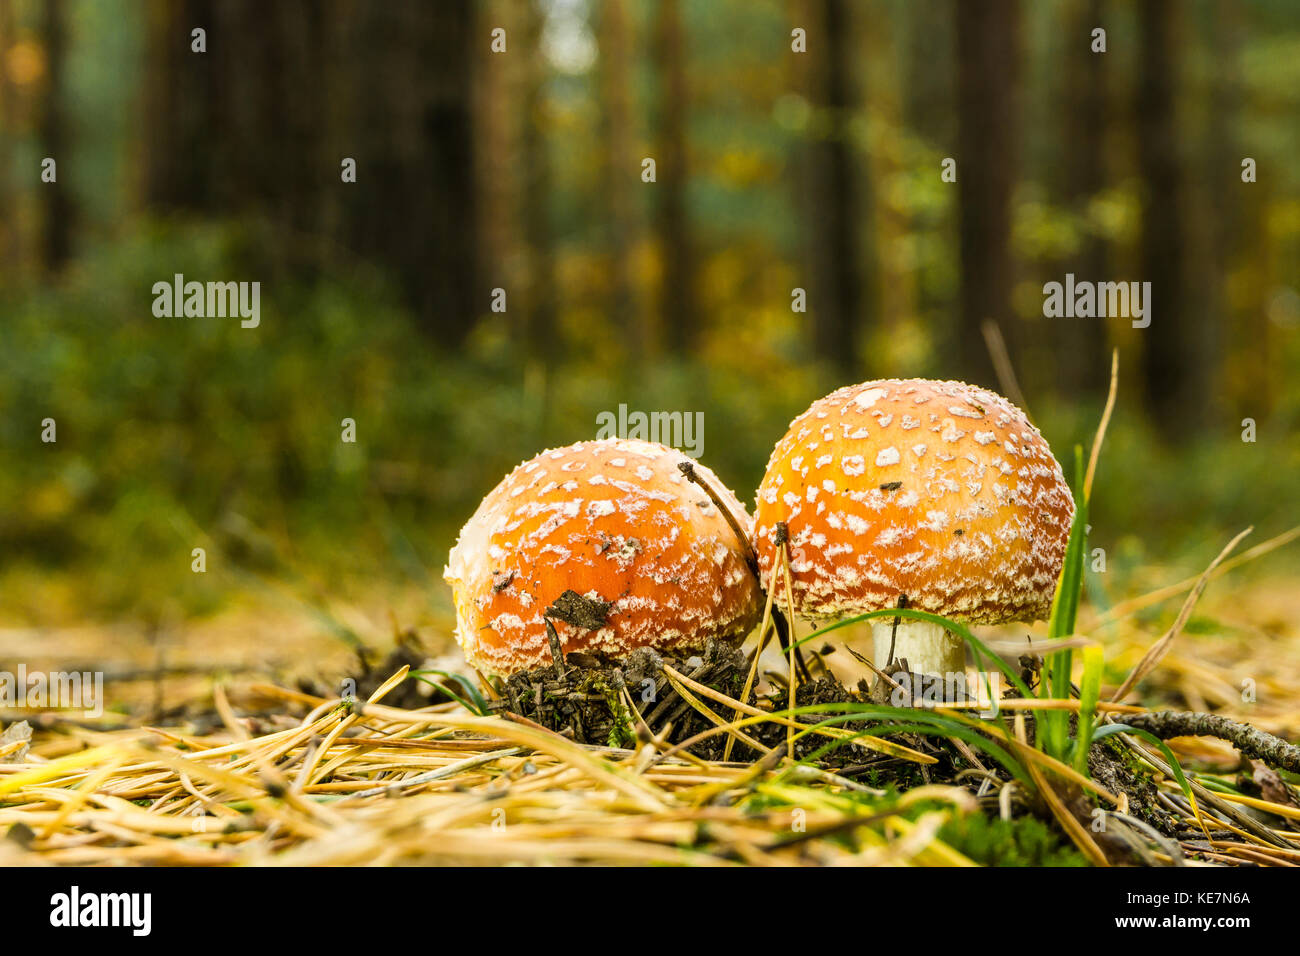 Photo horizontale de beau couple de red toadstools. Les jeunes champignons se développe à partir de mousse et d'herbe avec quelques brindilles sèches et les aiguilles autour sur la voie en f Banque D'Images